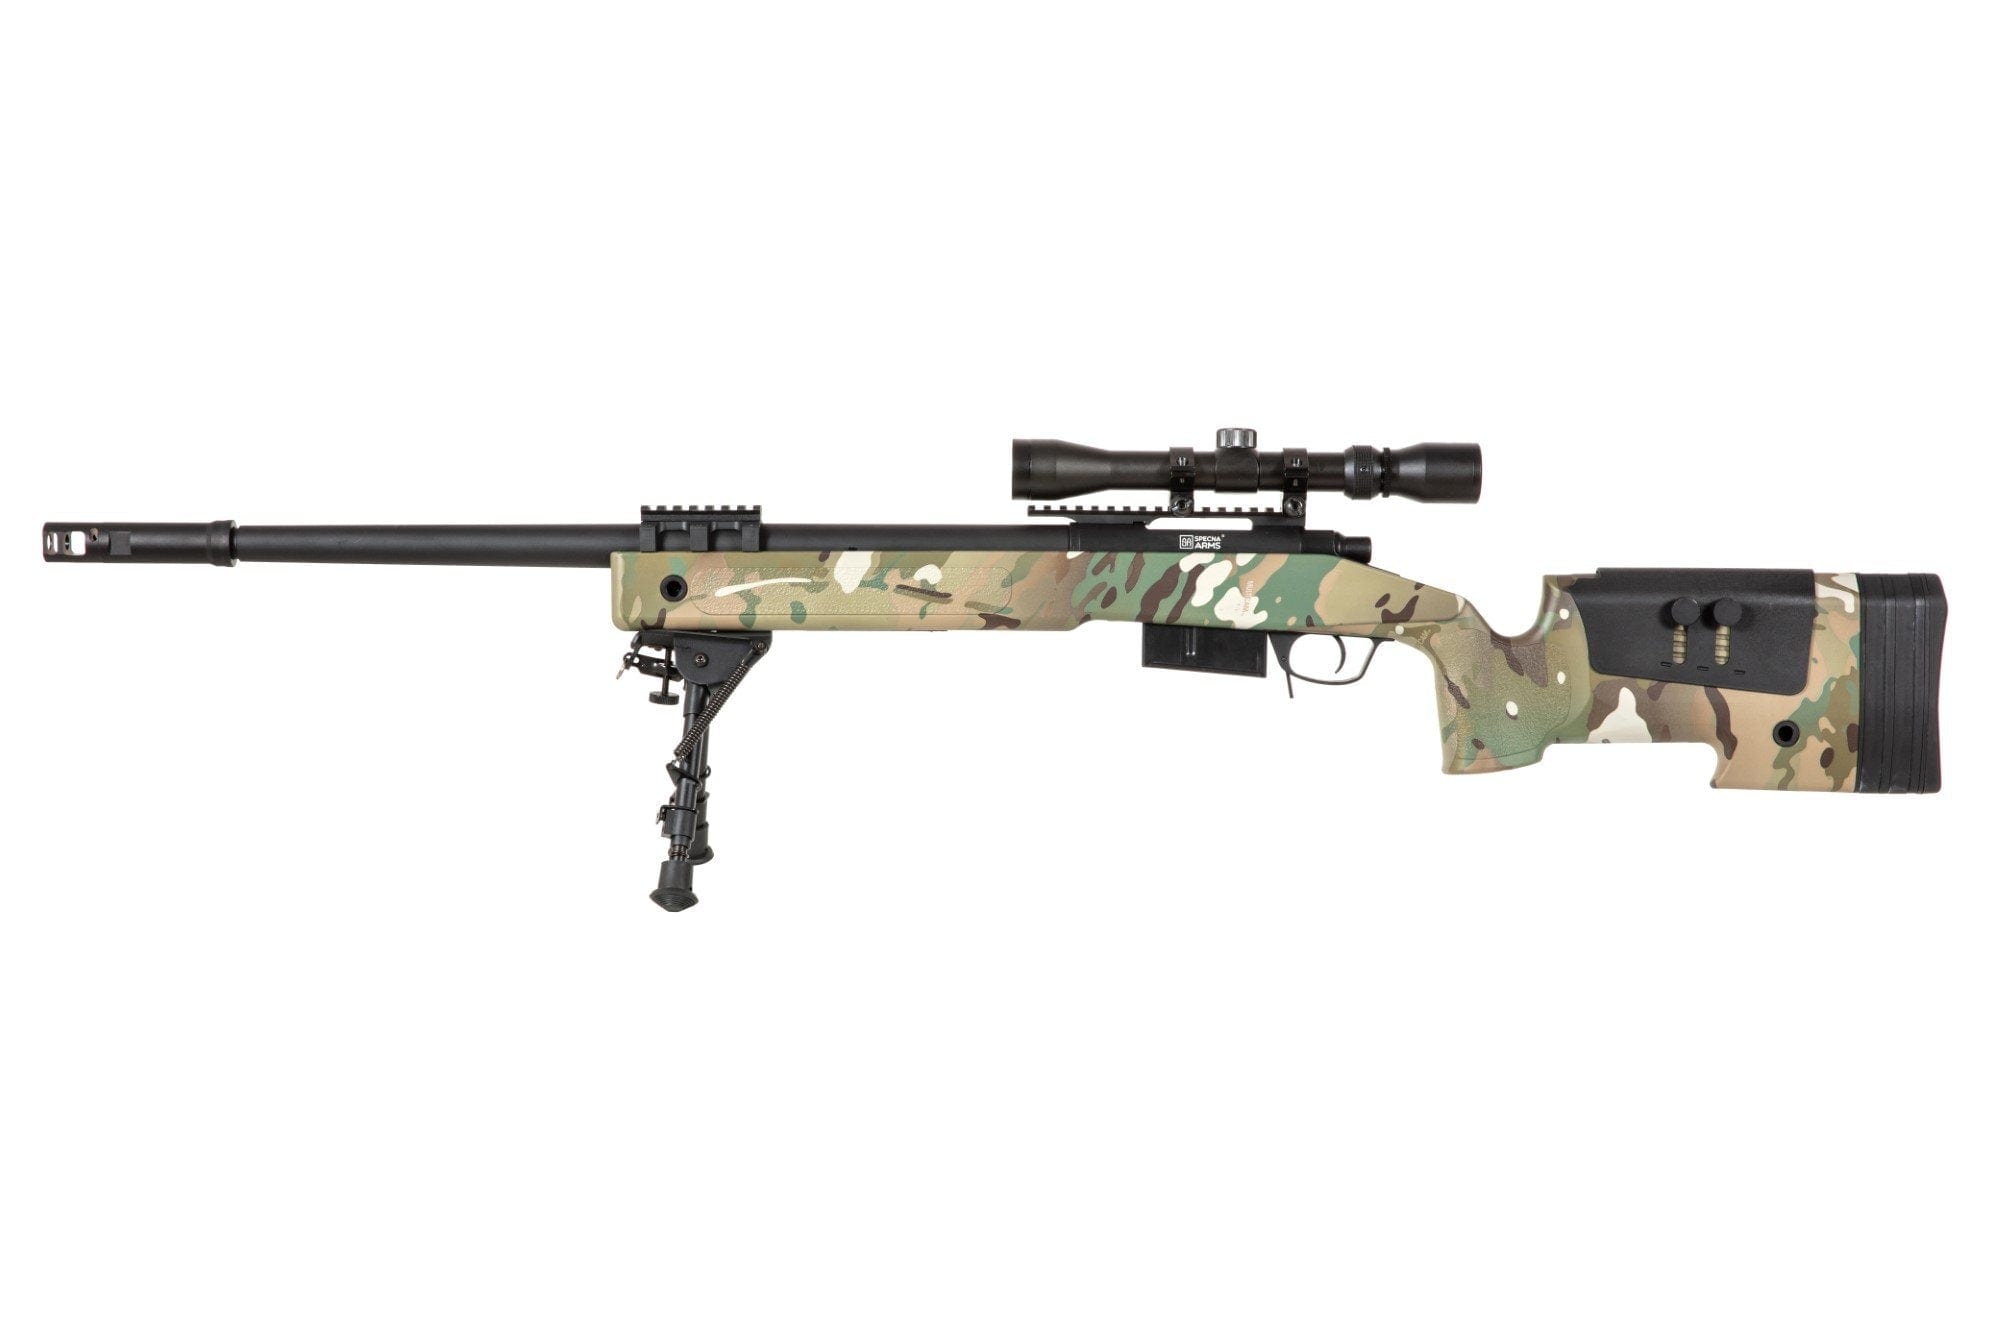 SA-S03 CORE™ High Velocity Sniper Rifle Replica with Scope and Bipod - MC